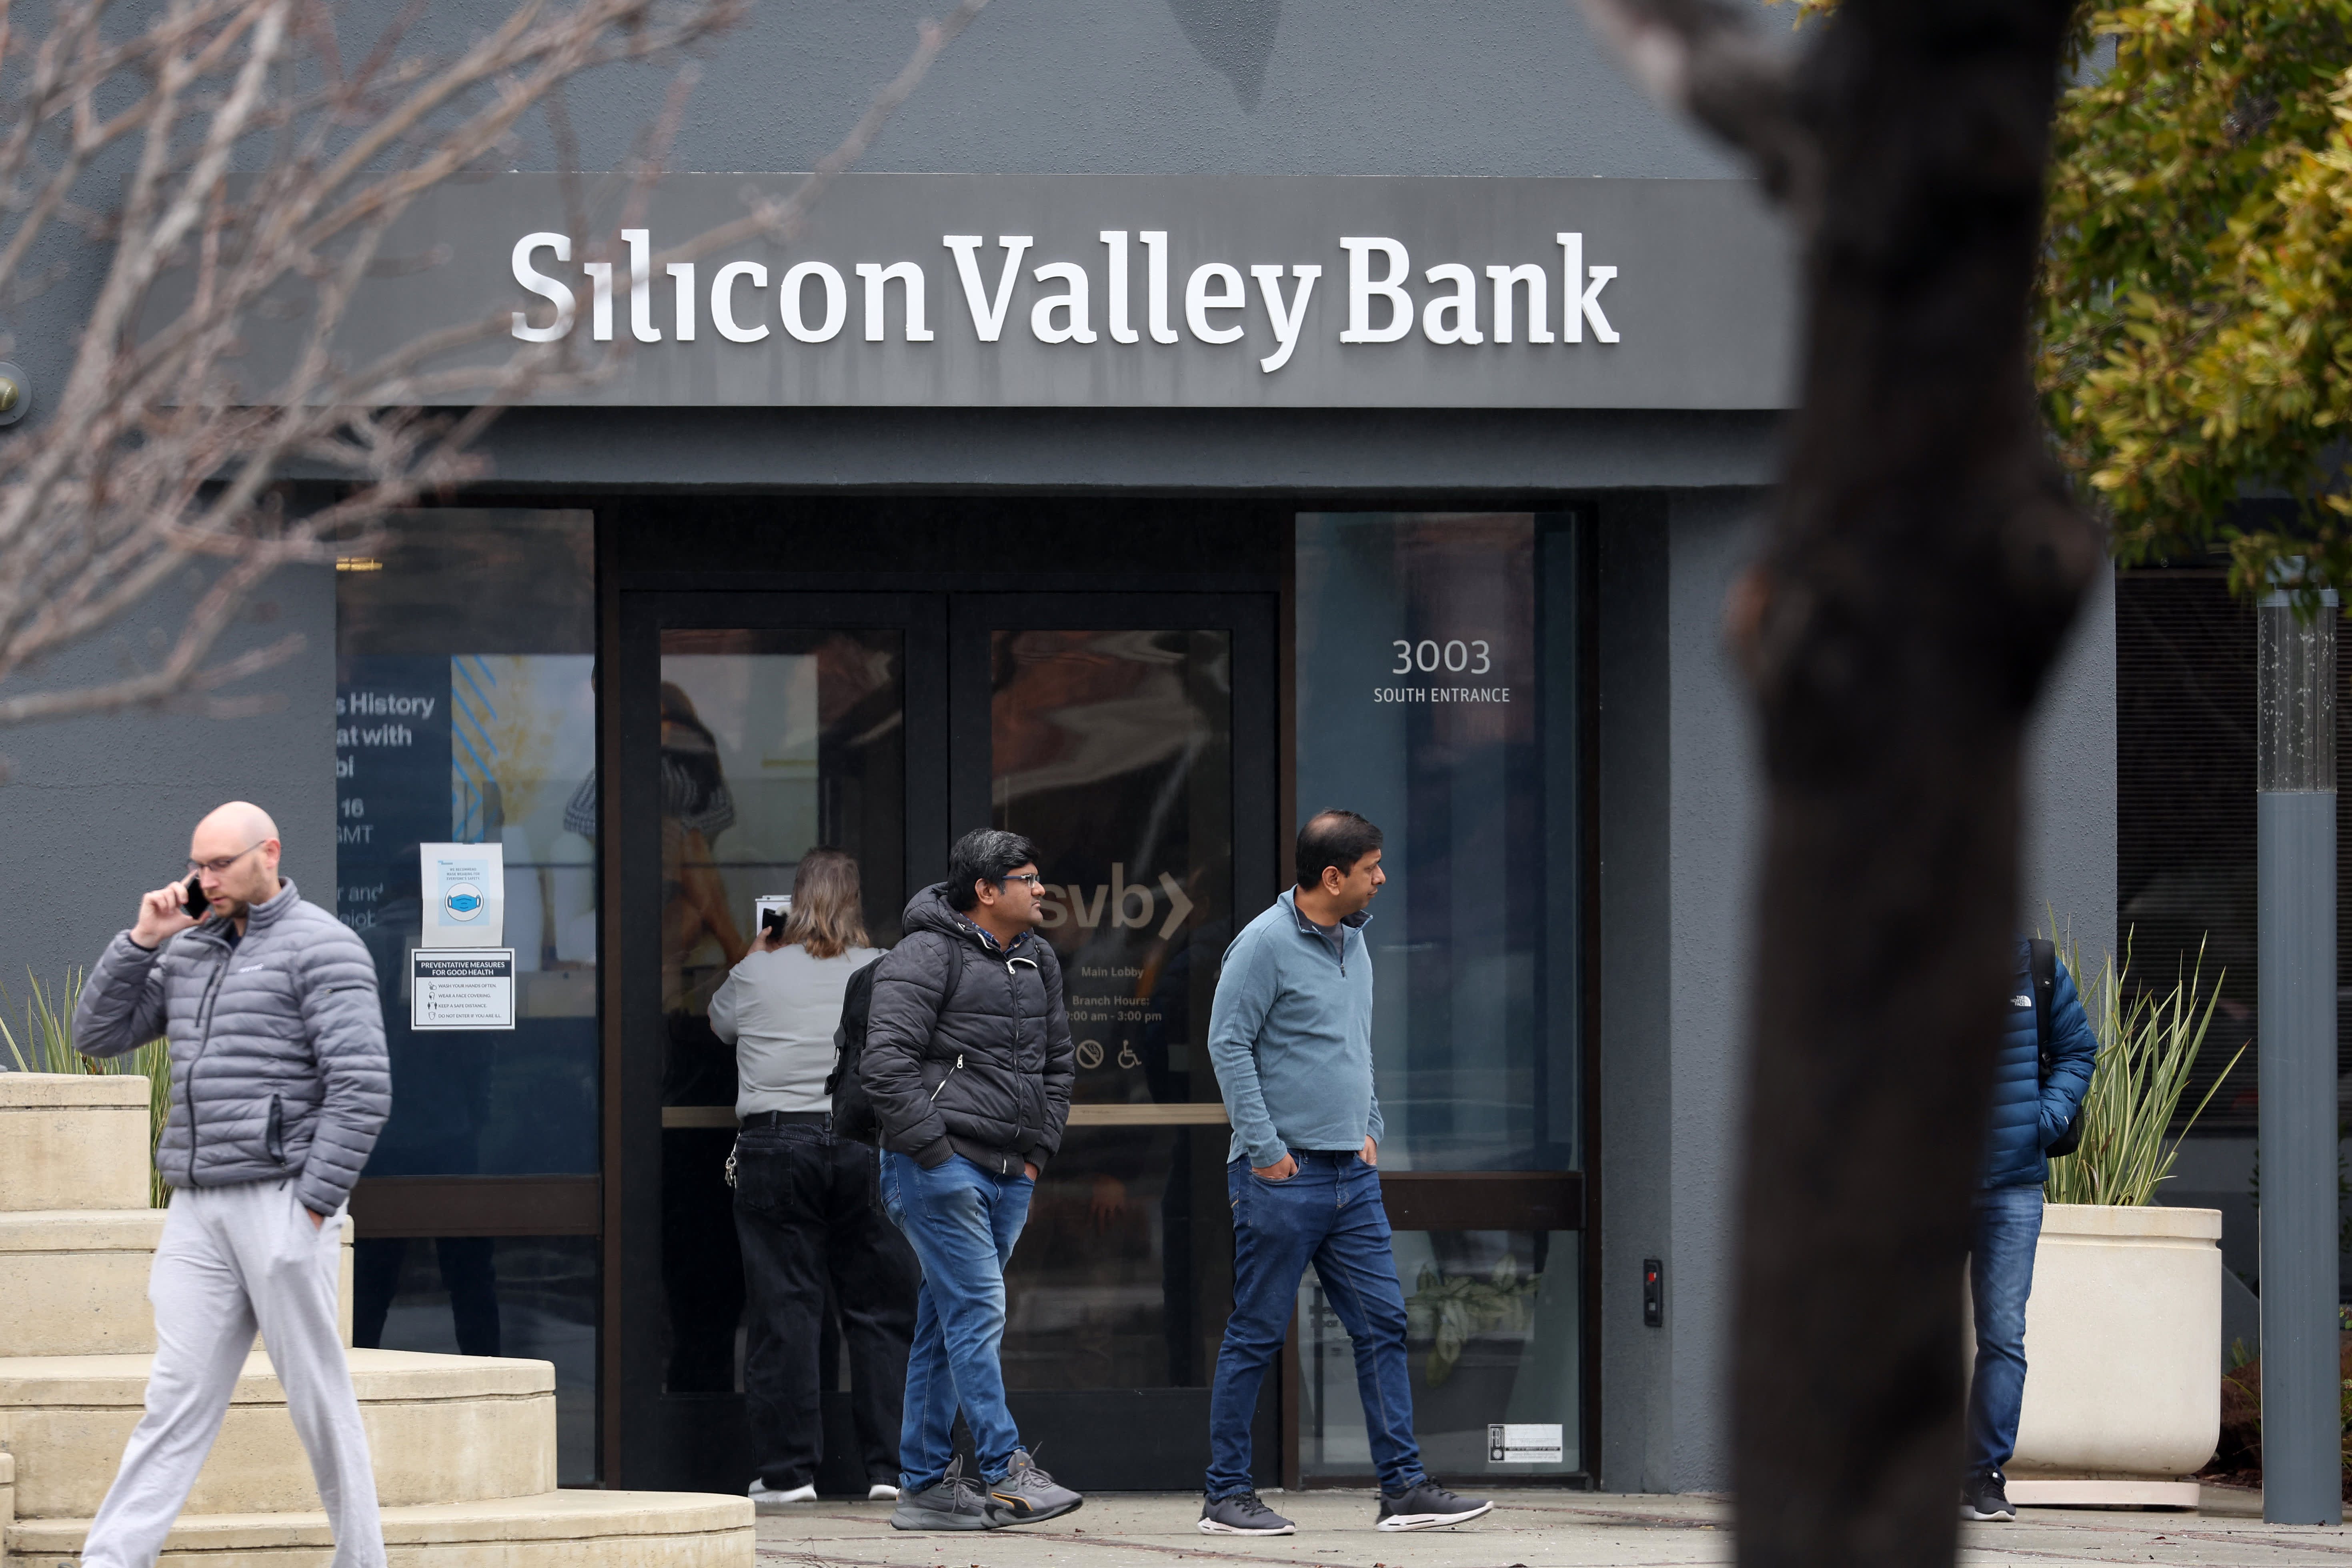 La quiebra del banco de Silicon Valley llevó a los inversores a pedir ayuda al gobierno